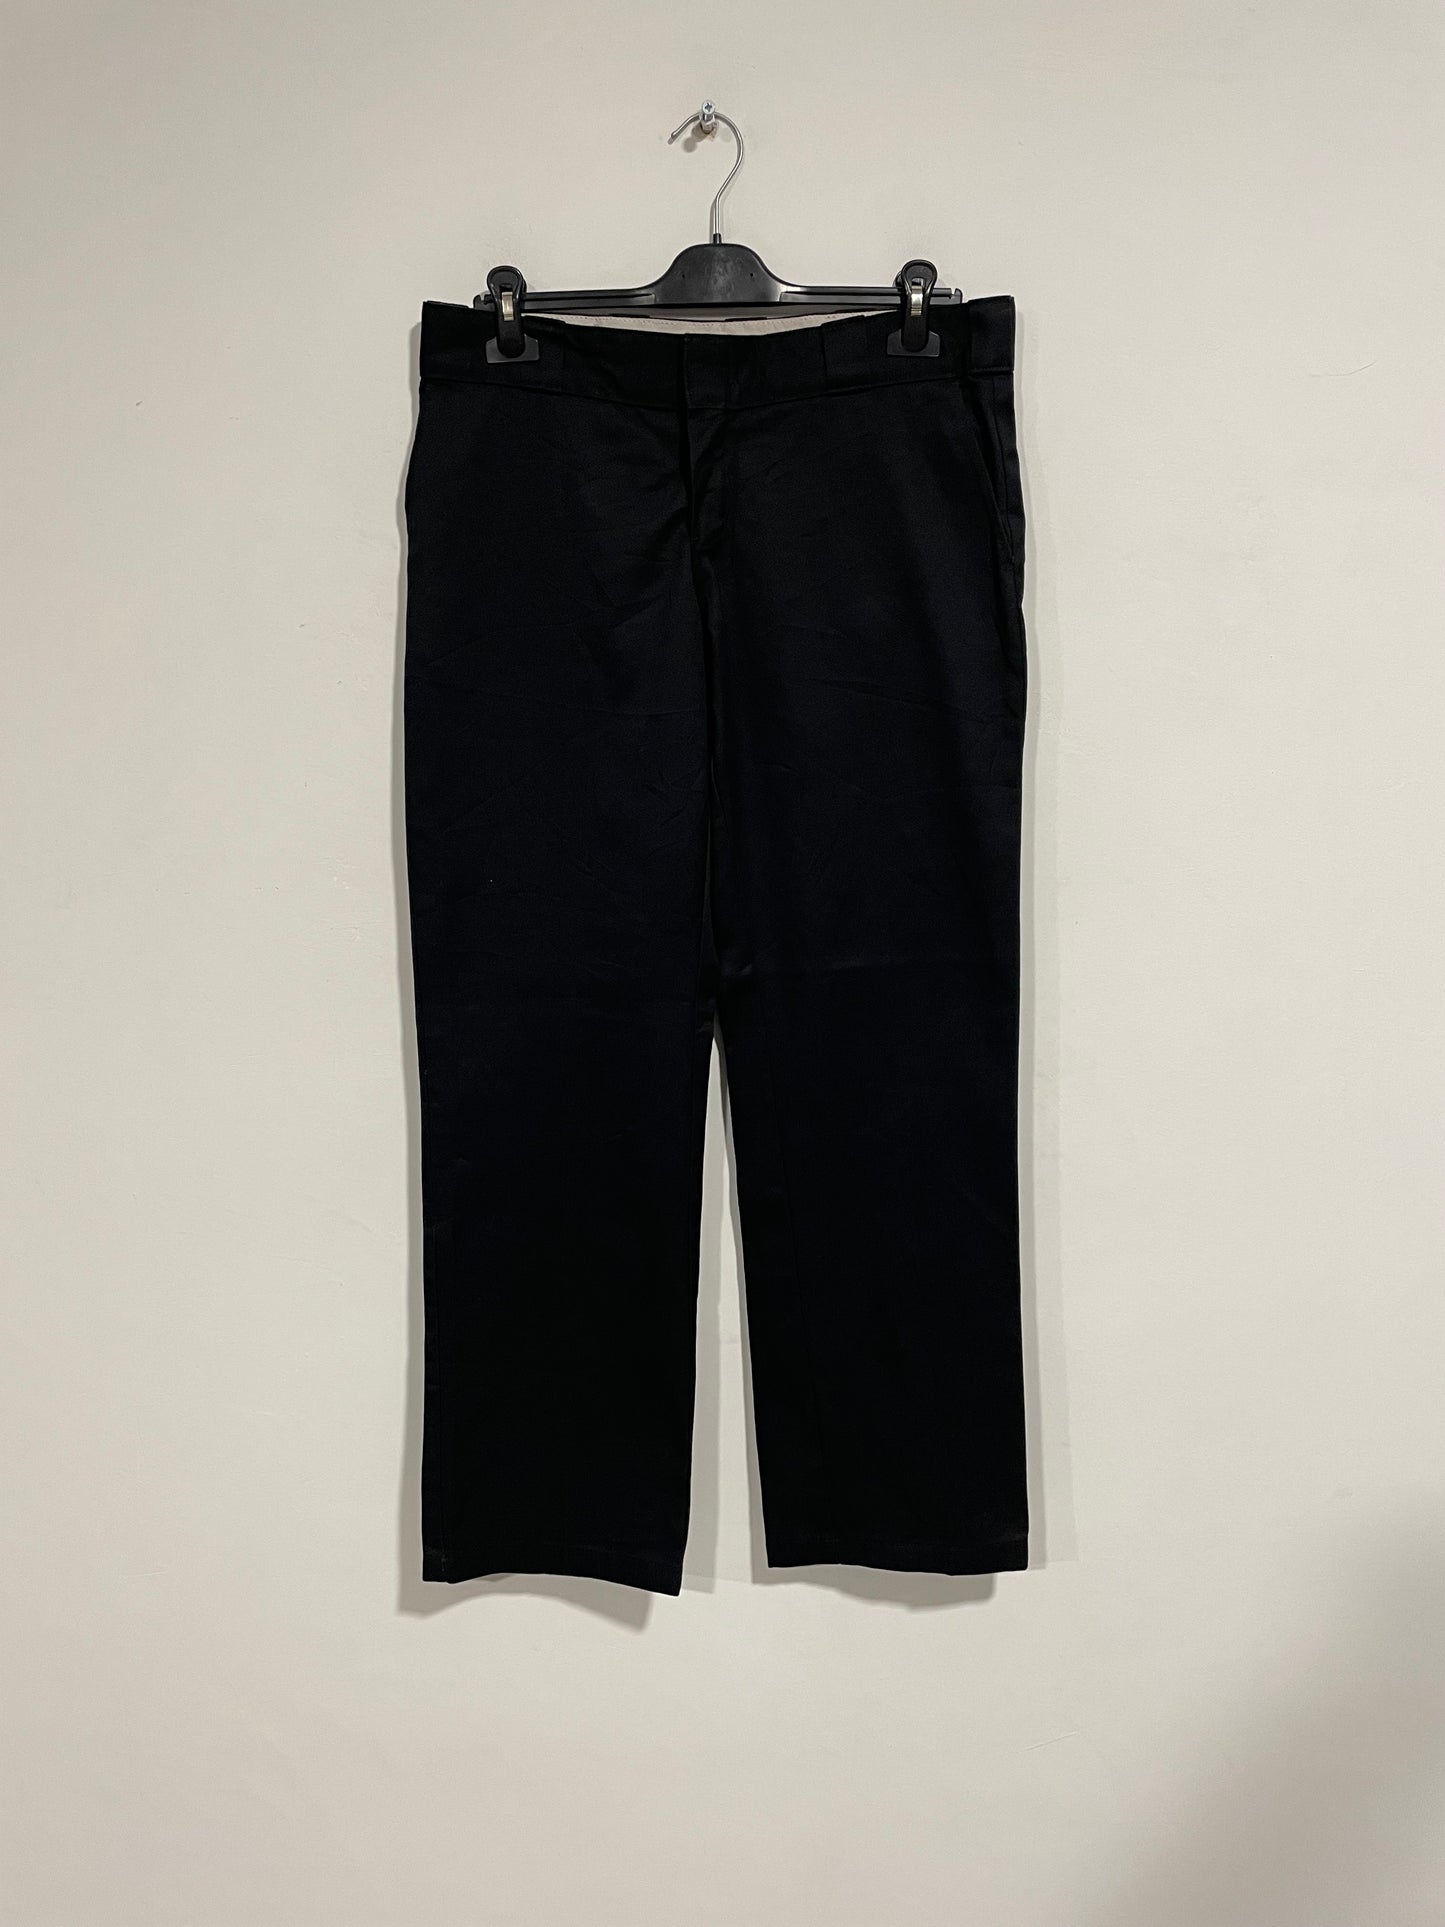 Pantalone Dickies 774 (D114)